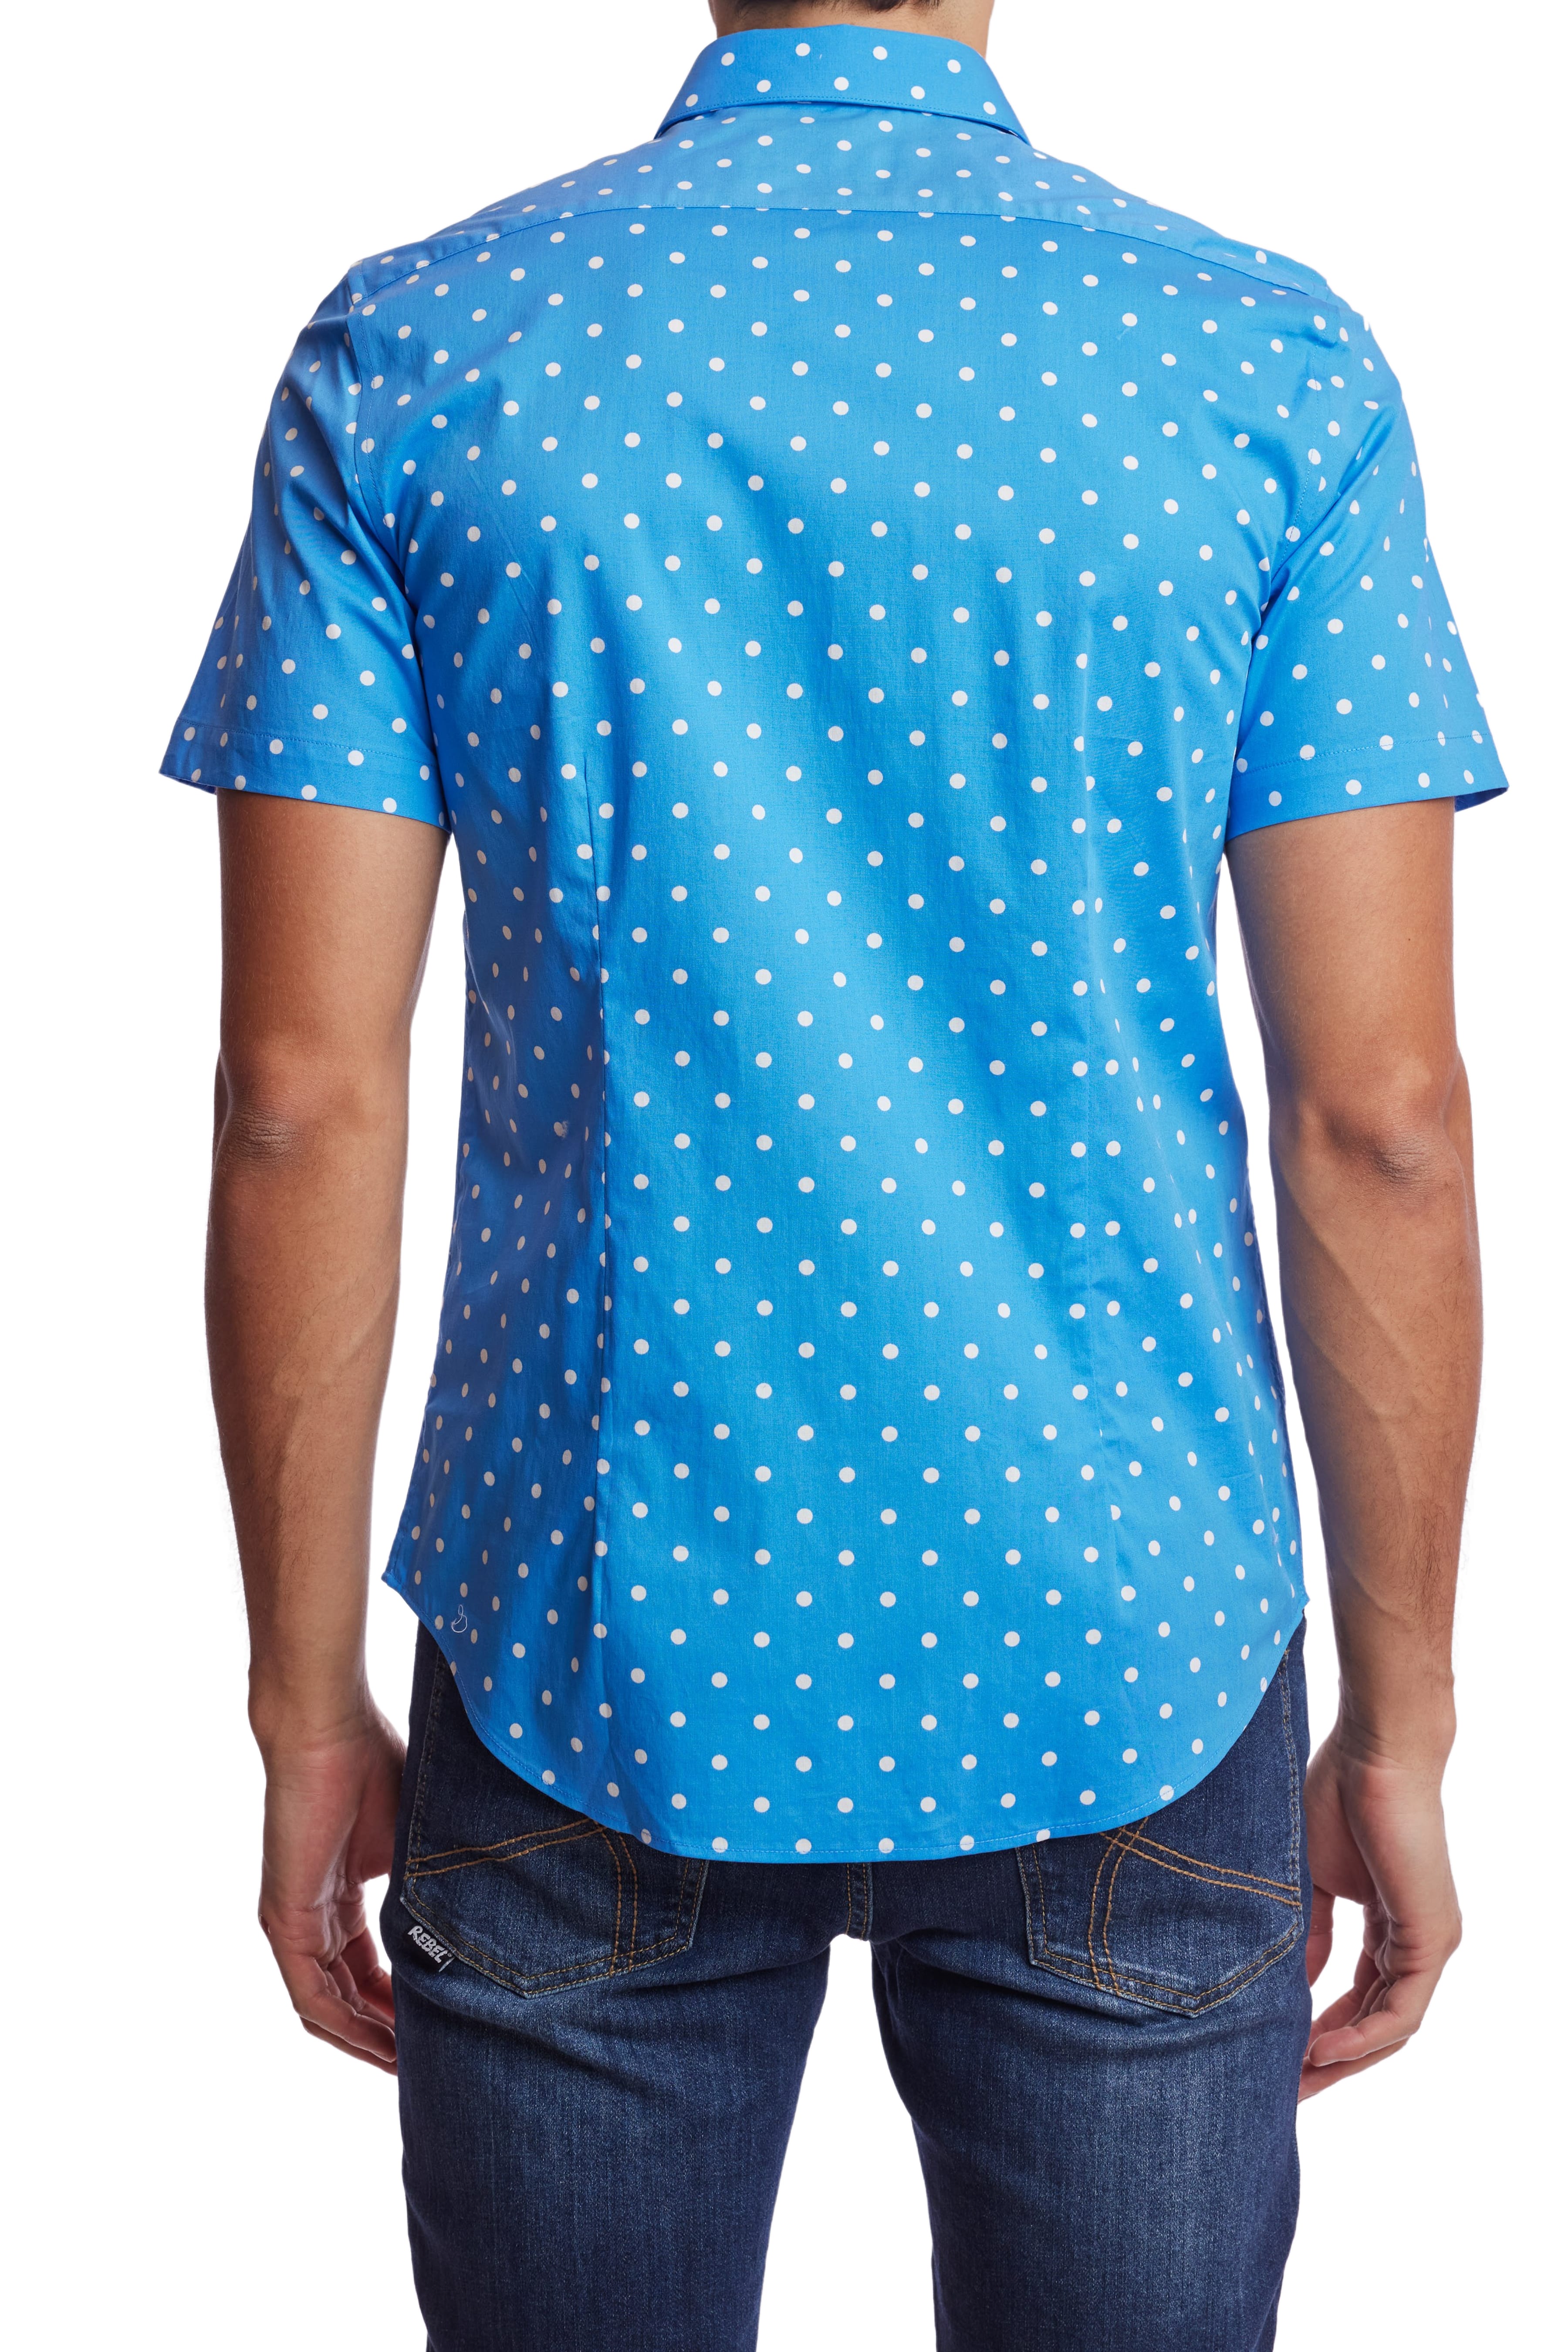 Sawyer S/S Shirt - Sky Polka Dots